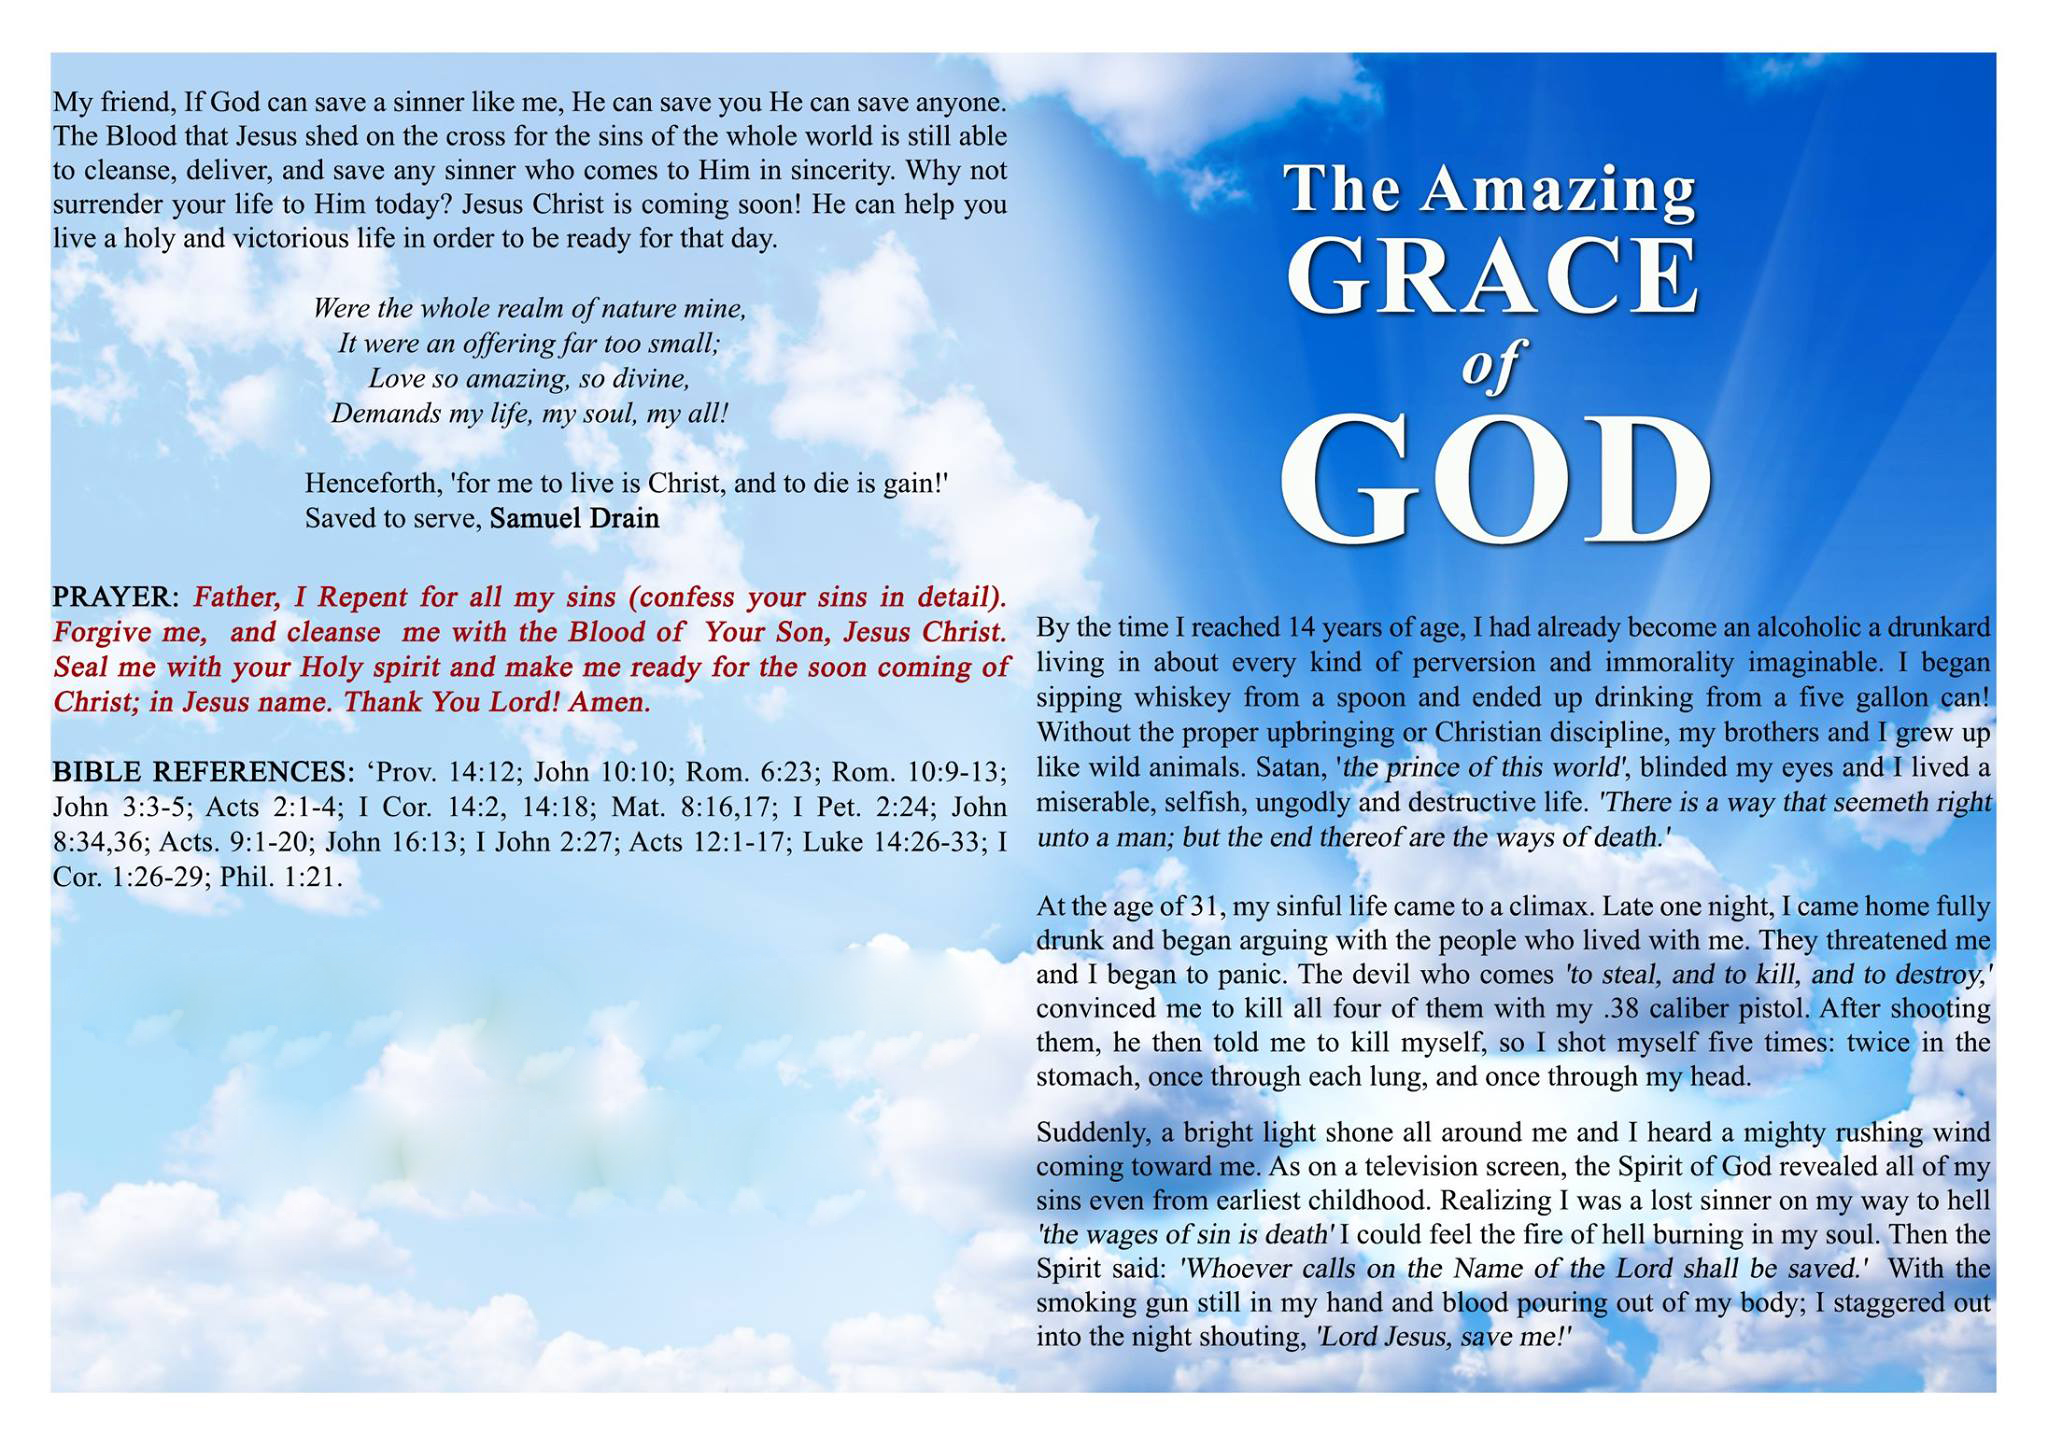 Amazing grace of God1